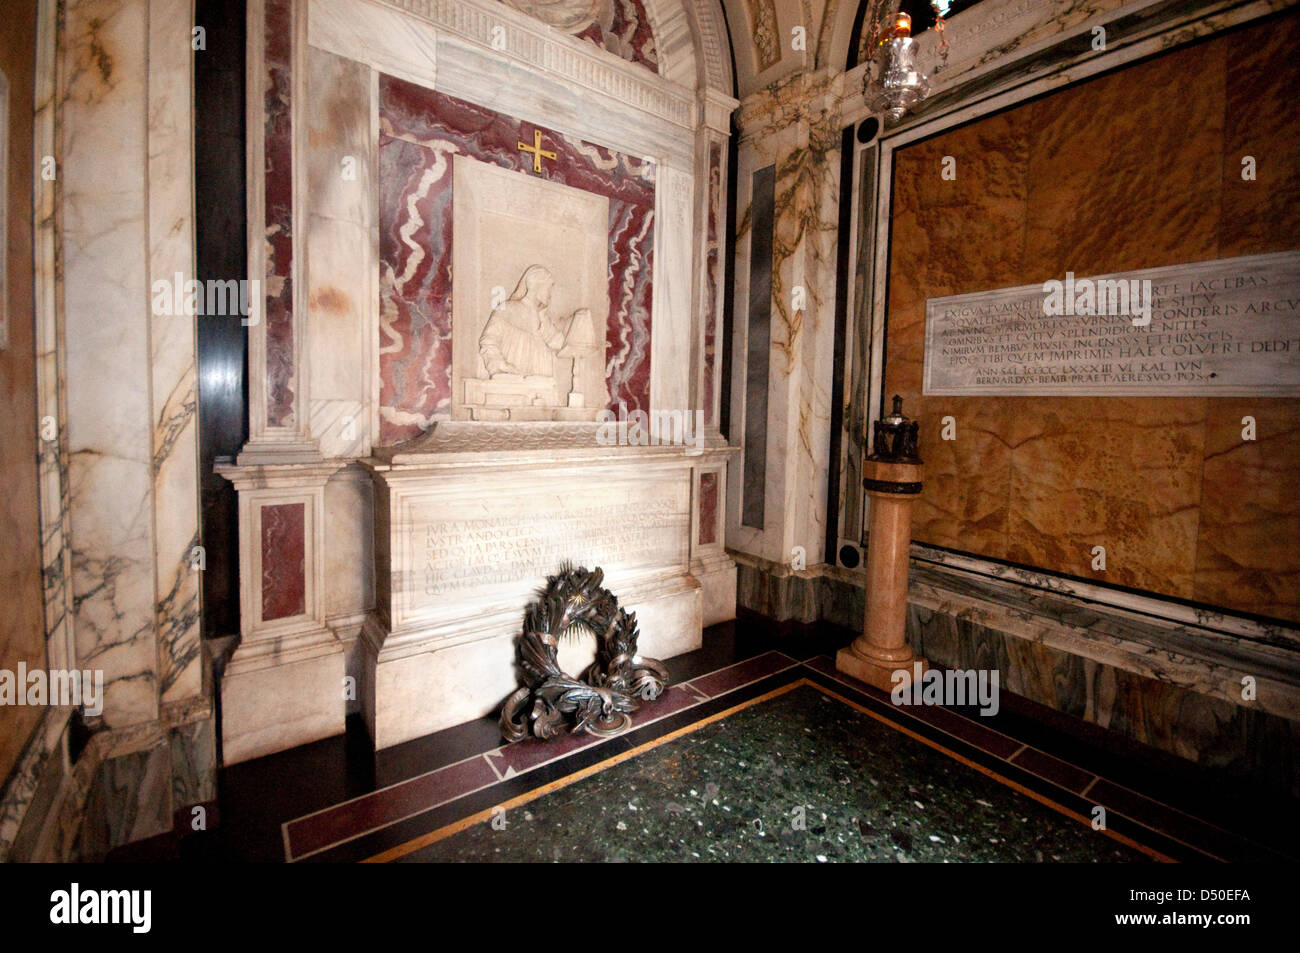 Italy, Emilia Romagna, Ravenna, Tomb of Dante Alighieri Stock Photo